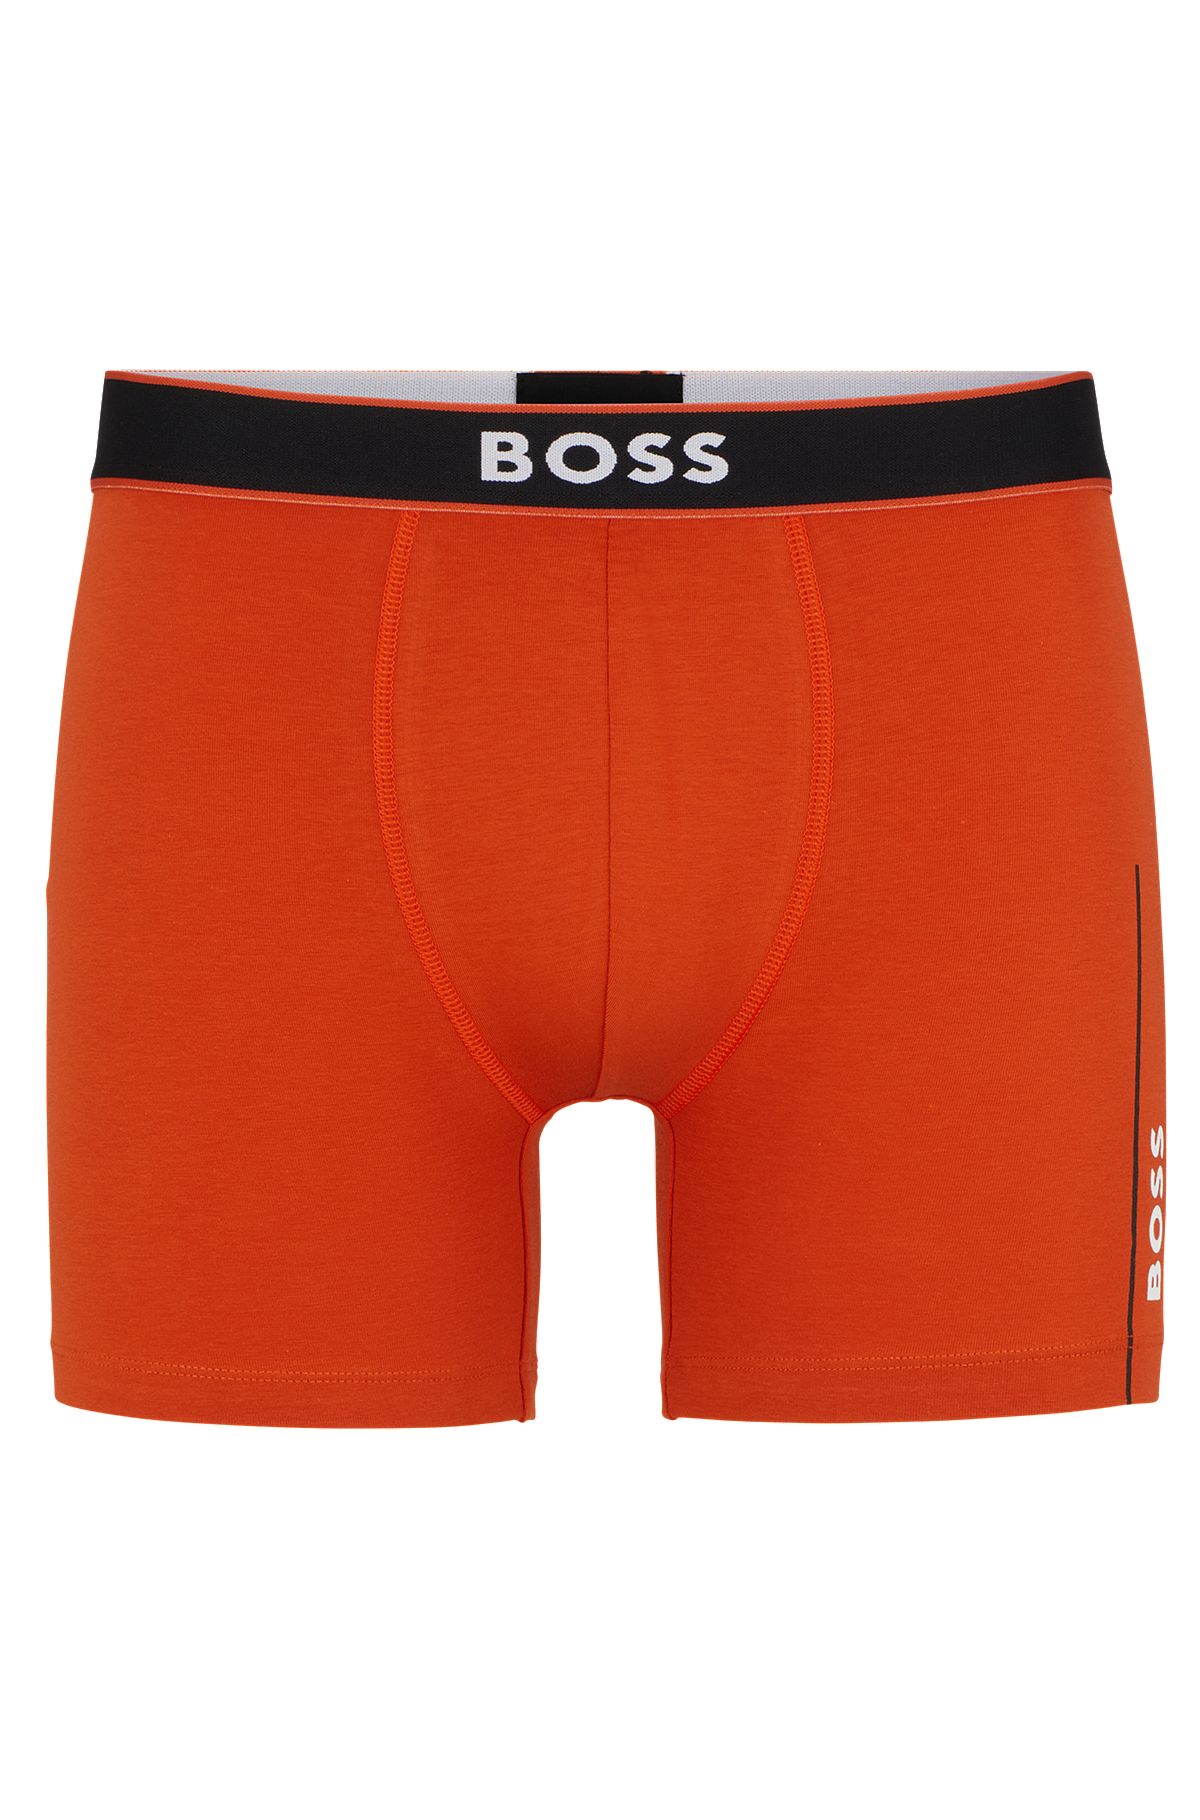 Underwear and Nightwear in Orange BOSS | HUGO Men by